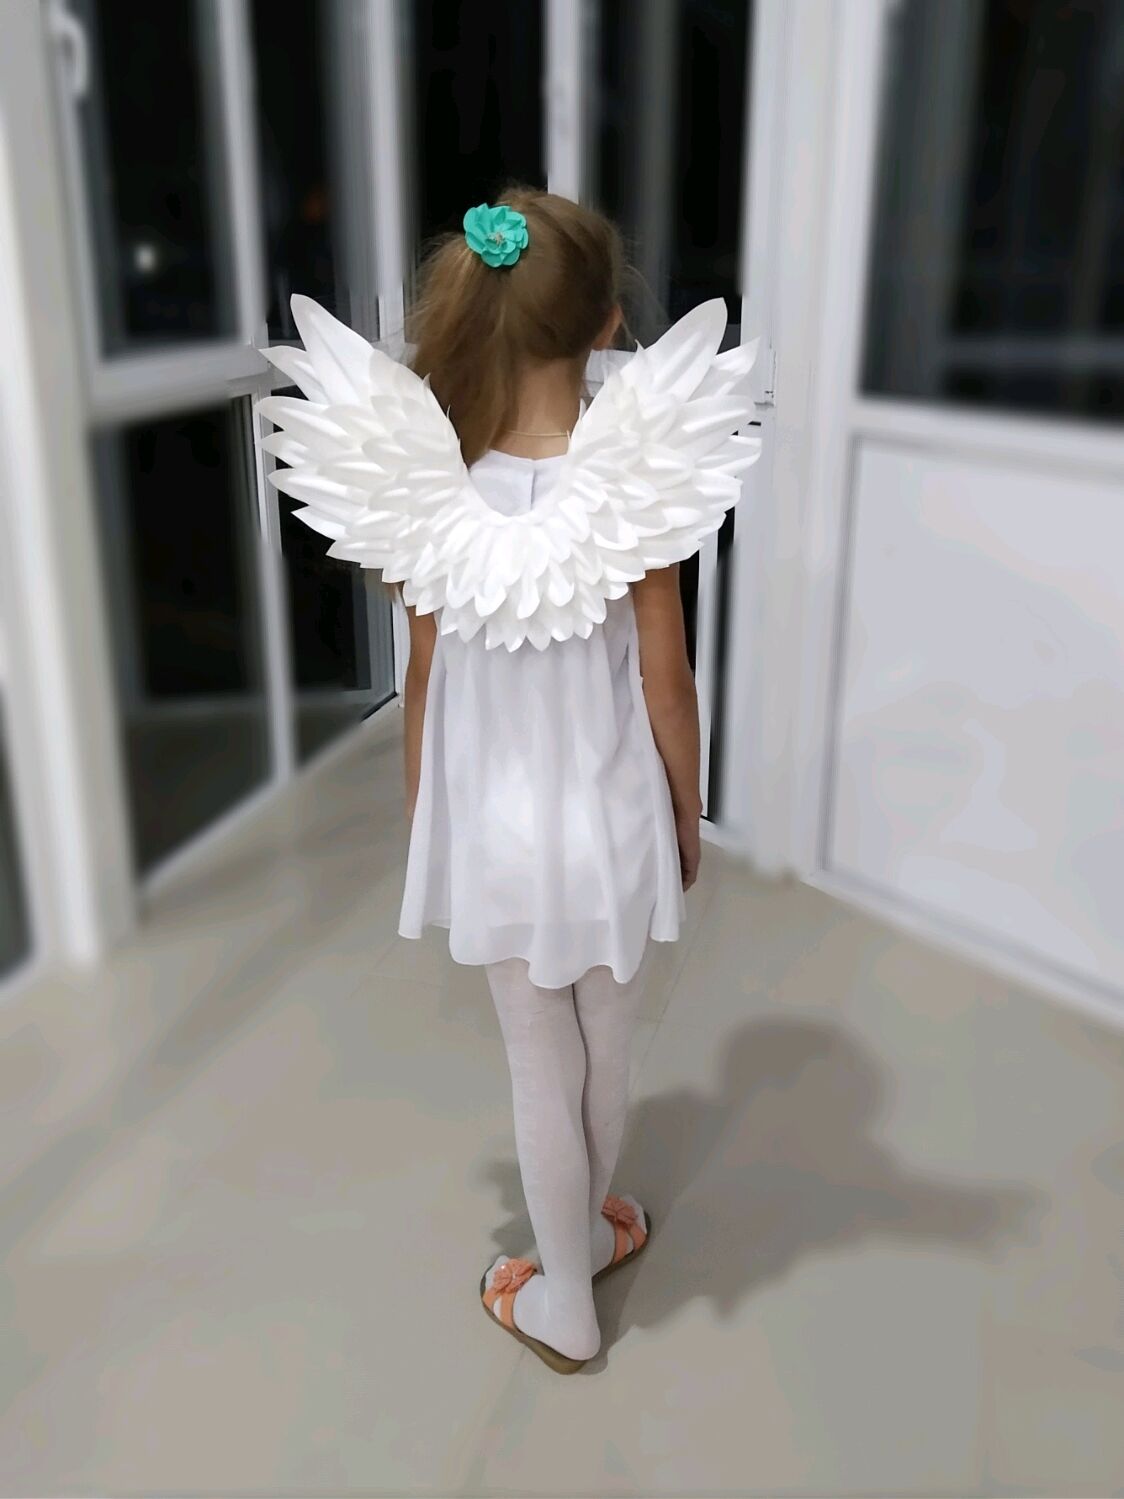 Картинки ангела с крыльями детские